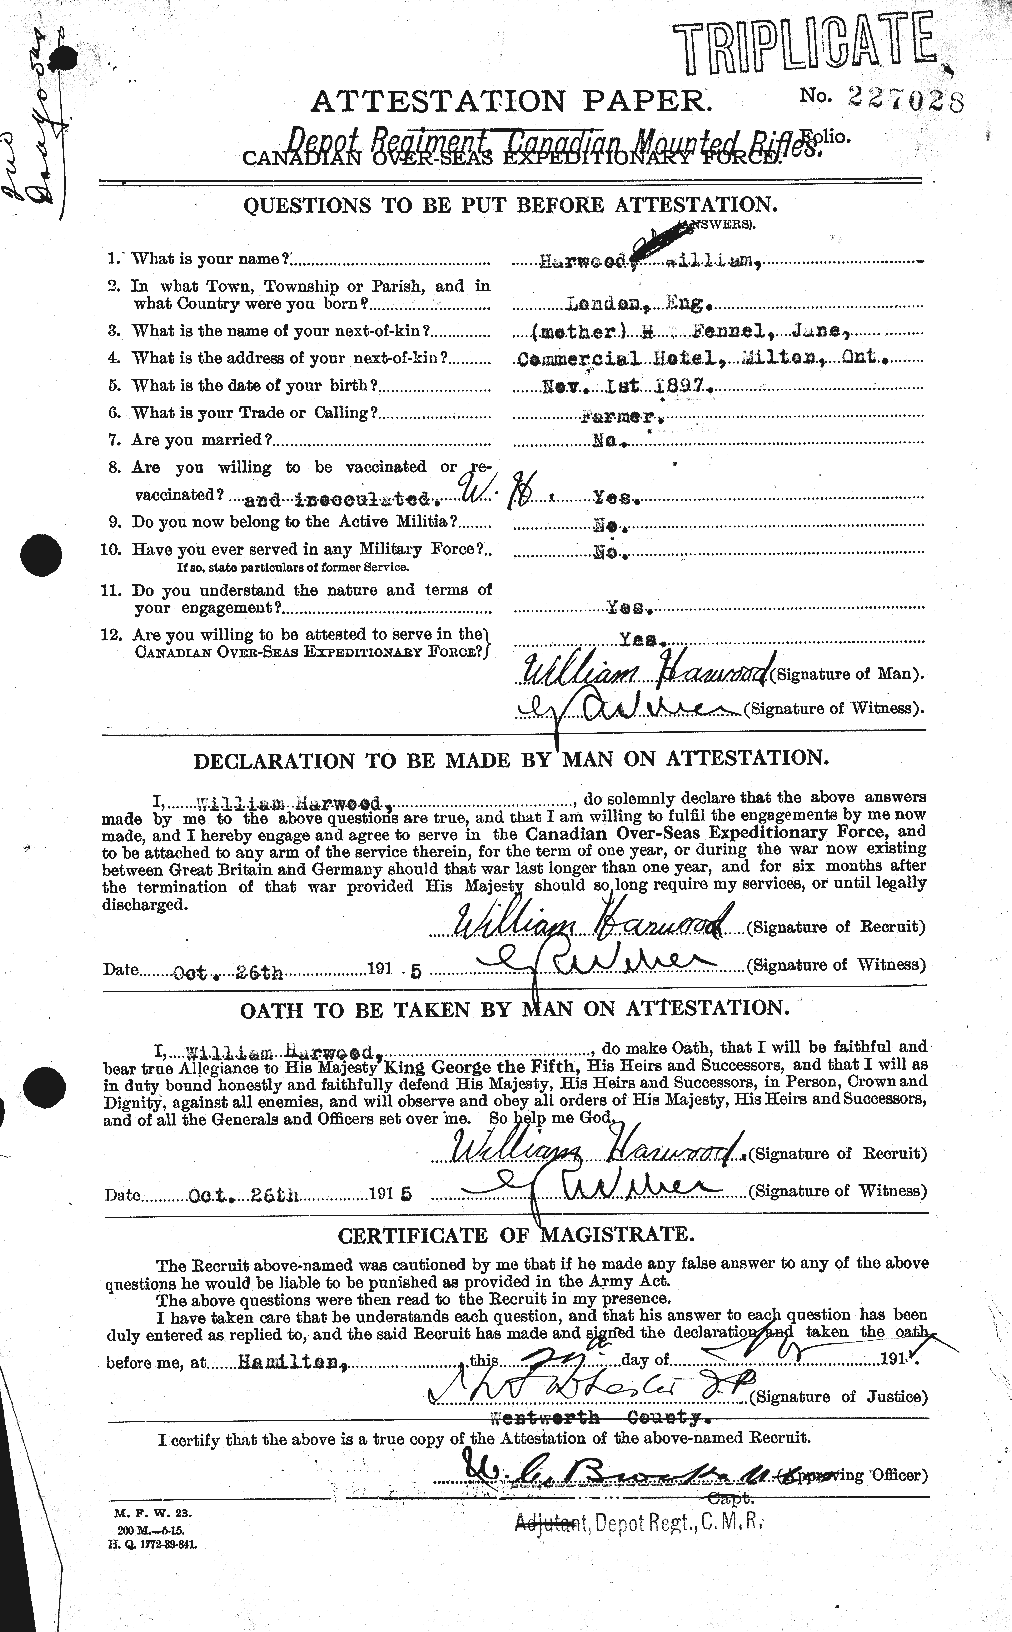 Dossiers du Personnel de la Première Guerre mondiale - CEC 384749a